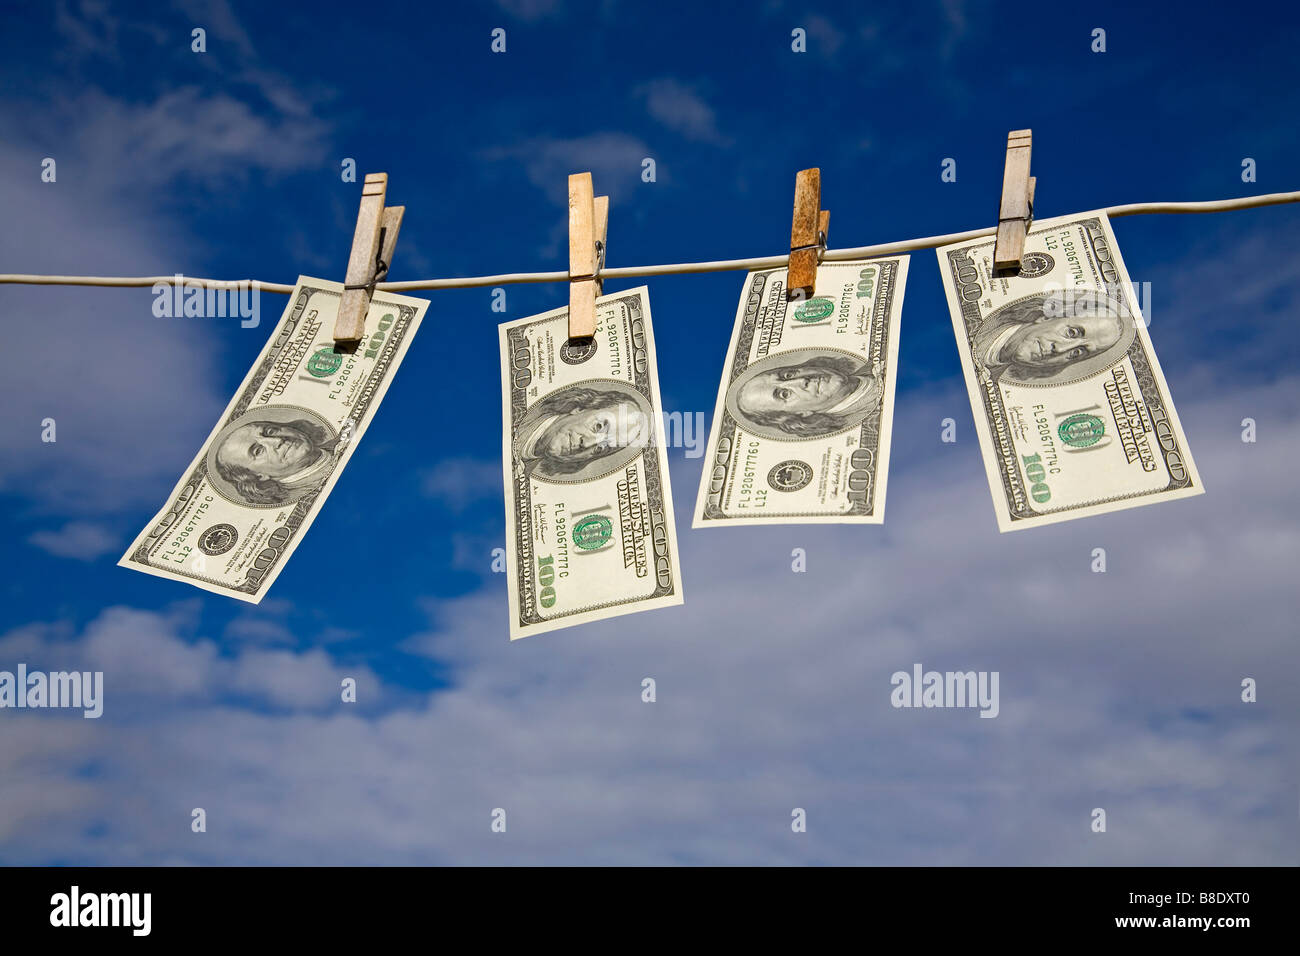 Laundering money money laundering laundering currency Stock Photo